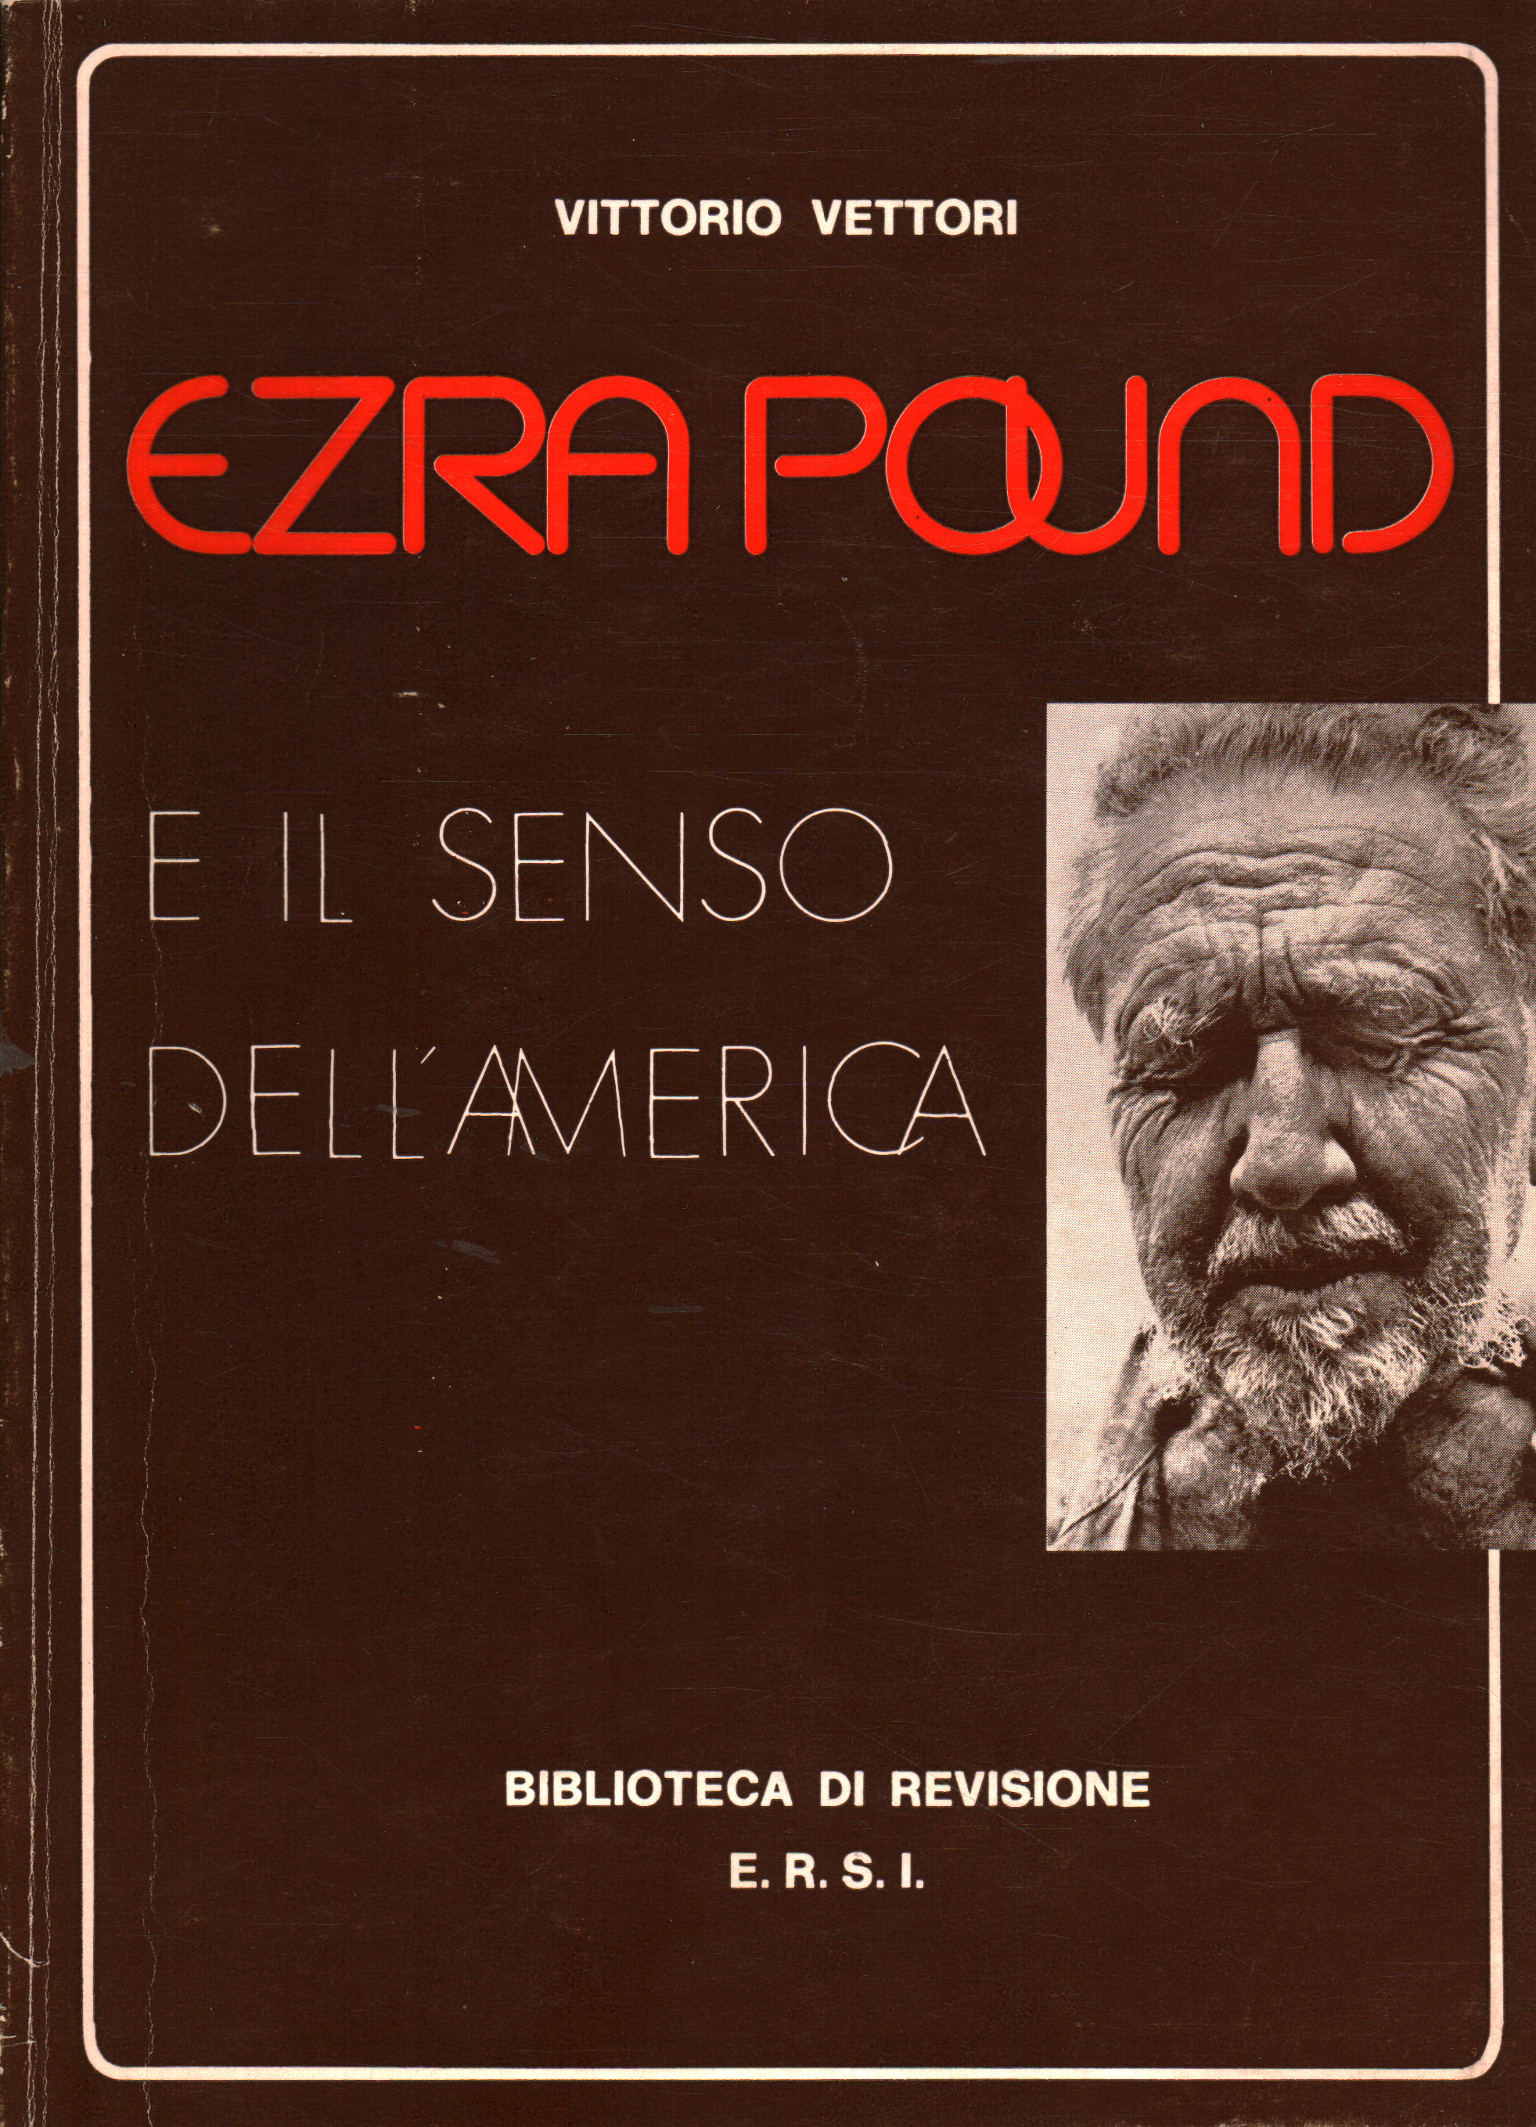 Ezra Pound e il senso dell America, Vittorio Vettori